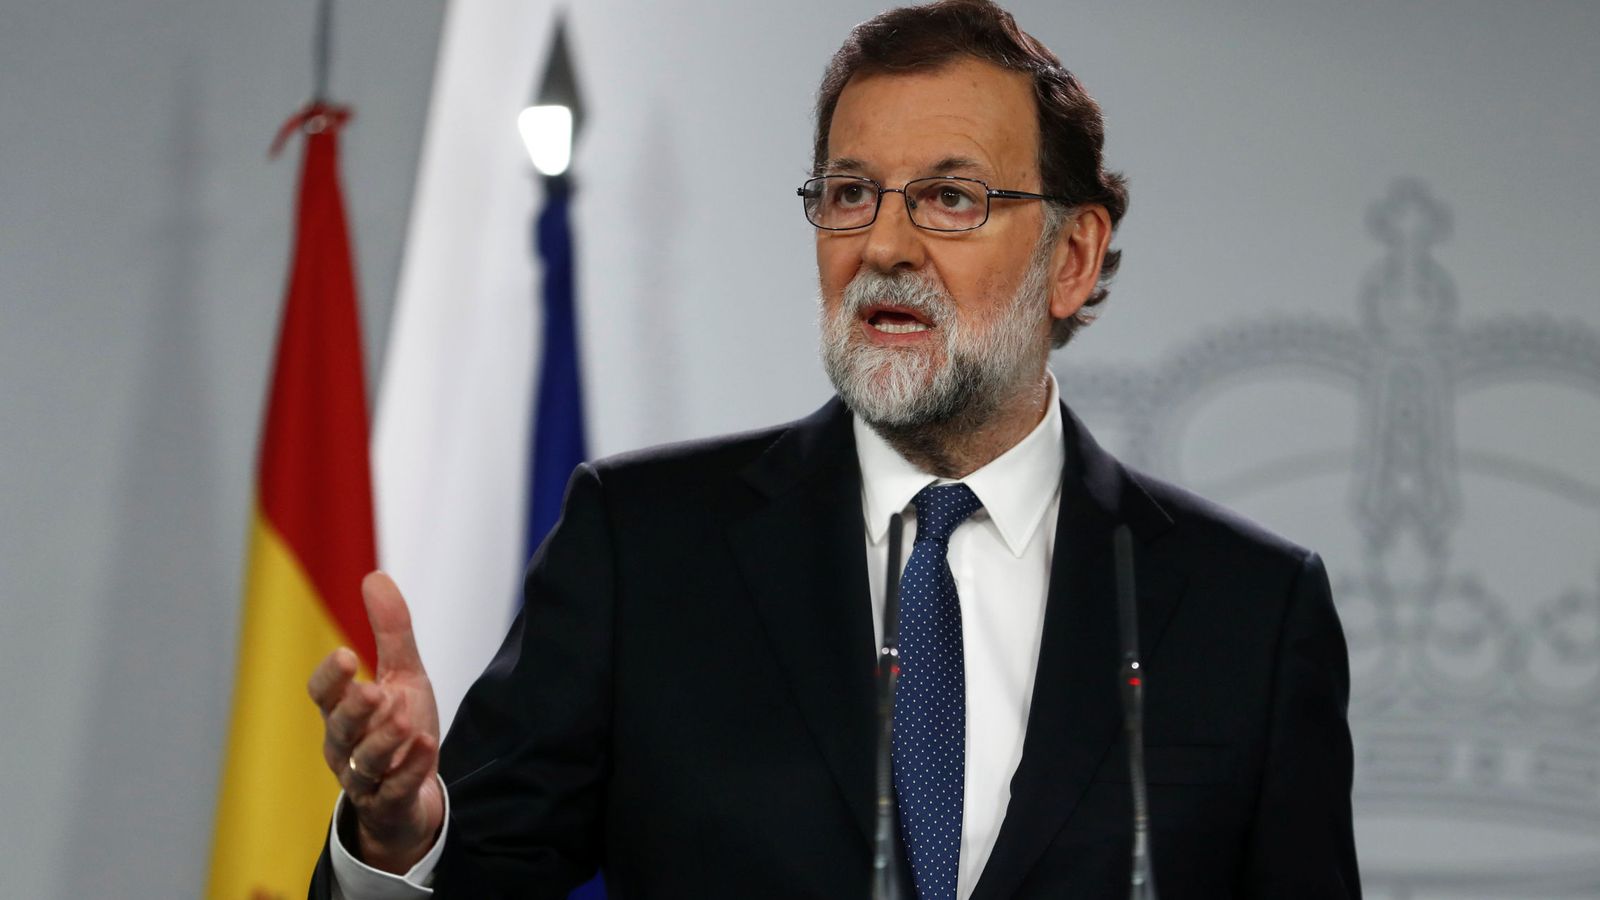 Foto: El presidente del Gobierno, Mariano Rajoy, durante su comparecencia. (Reuters)